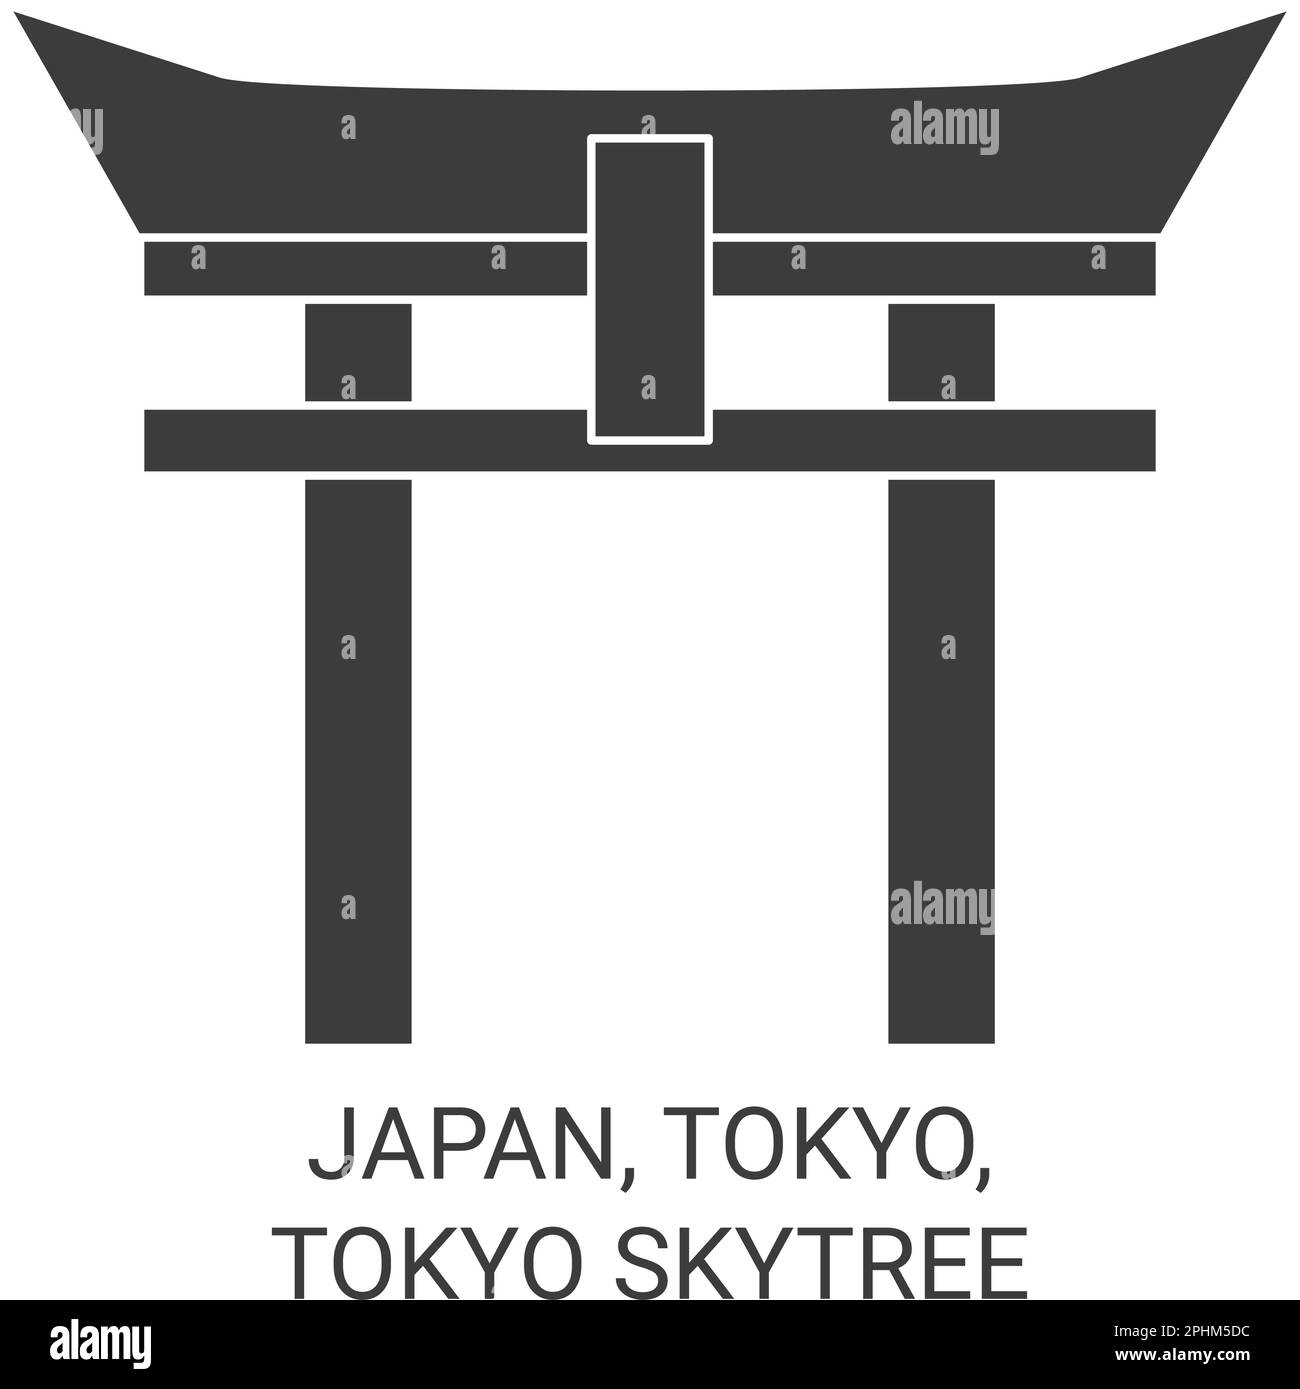 Japan, Tokyo, Tokyo Skytree travel landmark vector illustration Stock Vector